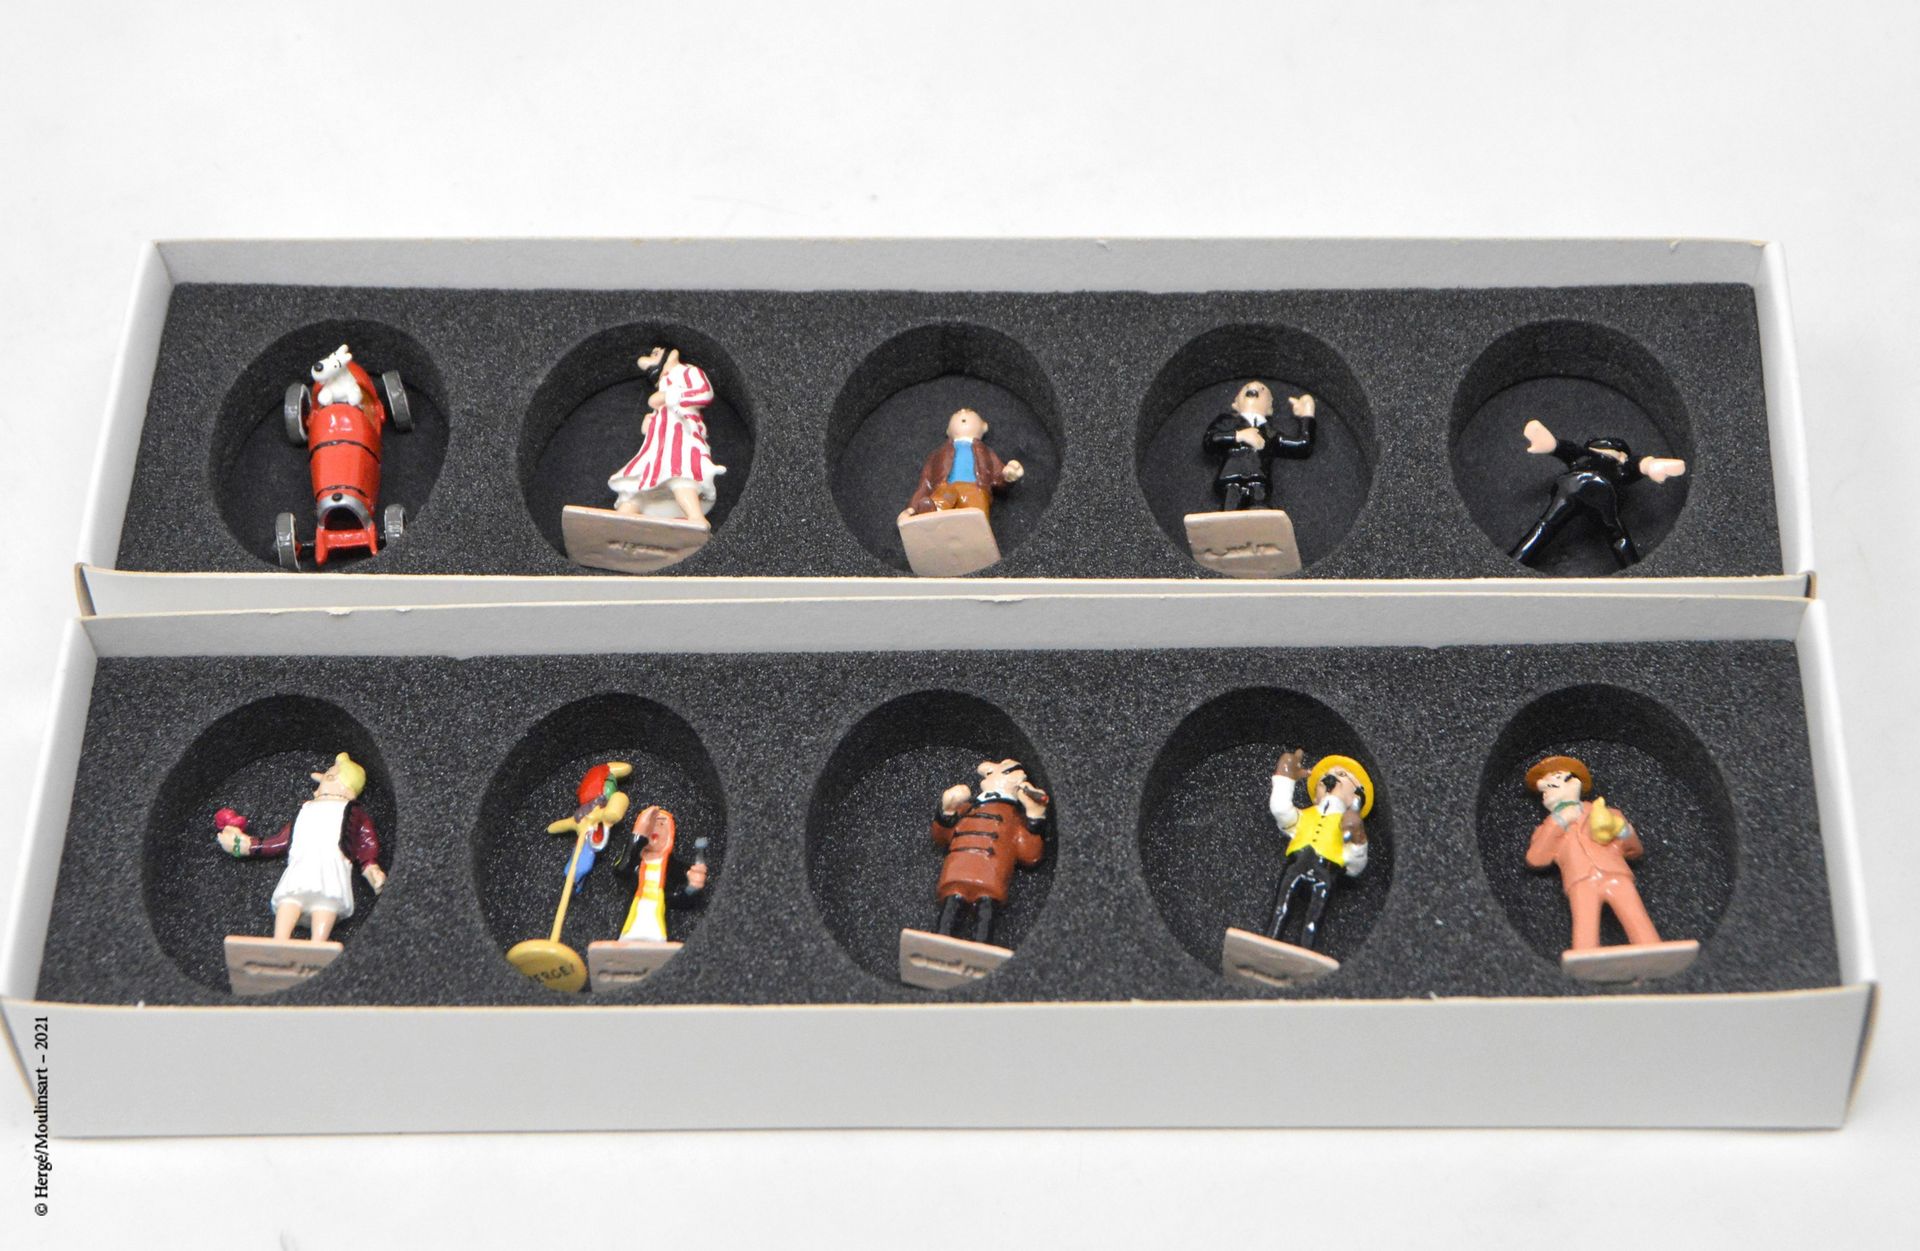 TINTIN Hergé/moulinsart

Hergé :丁丁系列第2号

十个经典迷你模型的盒子 (2004)

编号：09/46206

带着它的盒子&hellip;